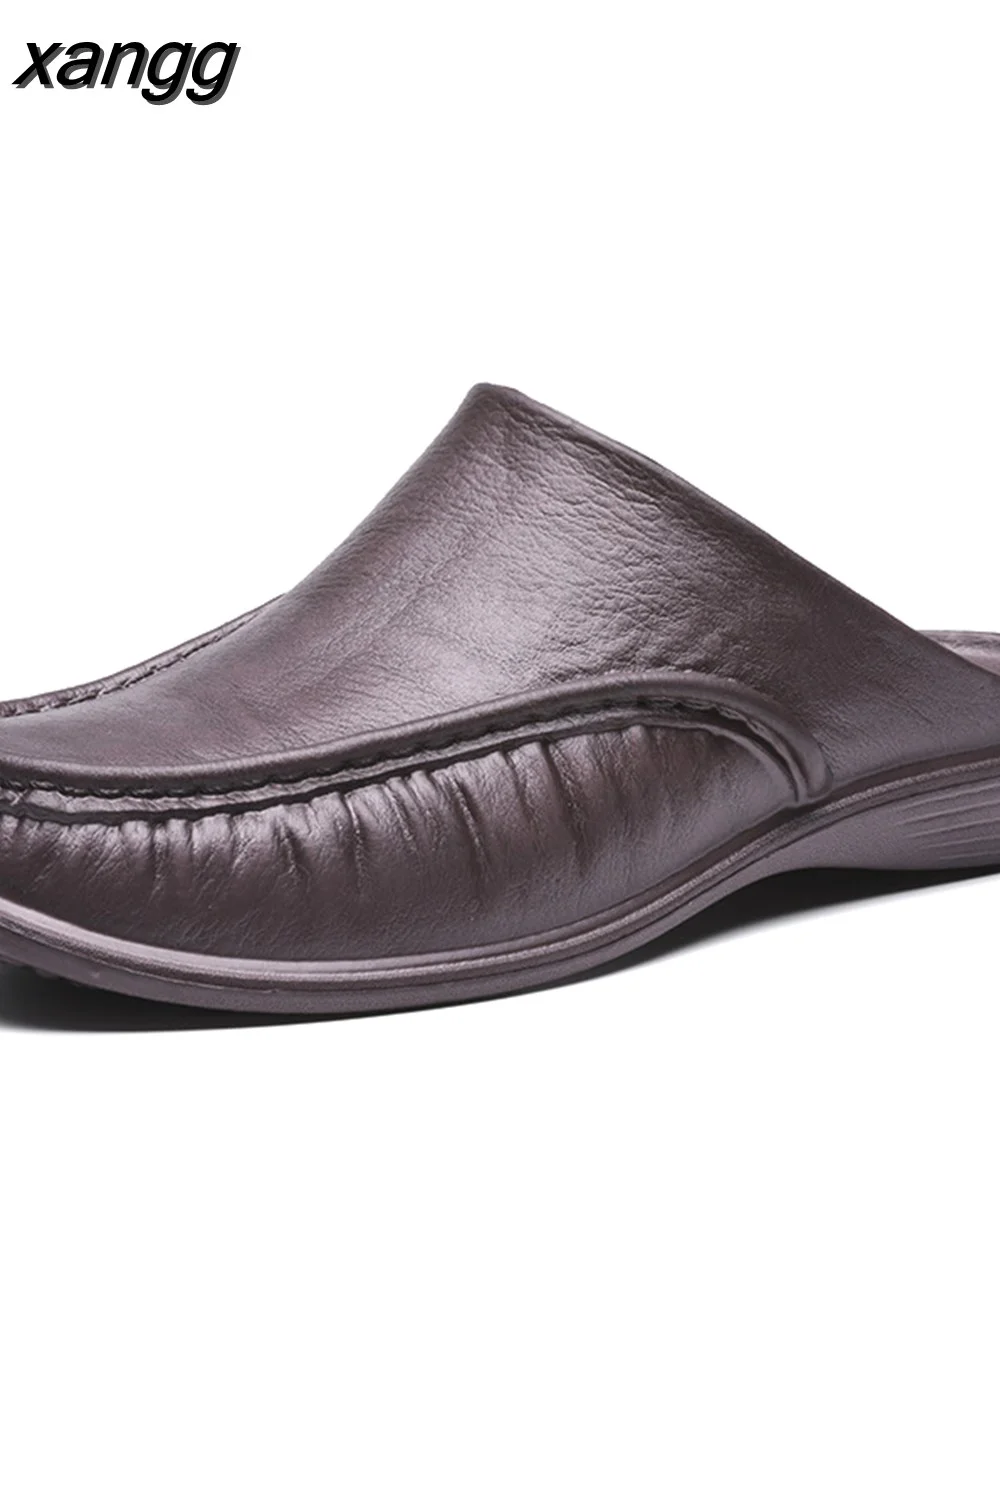 Punklens Men's Slippers EVA Slip on Flats Shoes Walking  Men Half Slipper Comfortable Soft Household Sandals Size 40-47